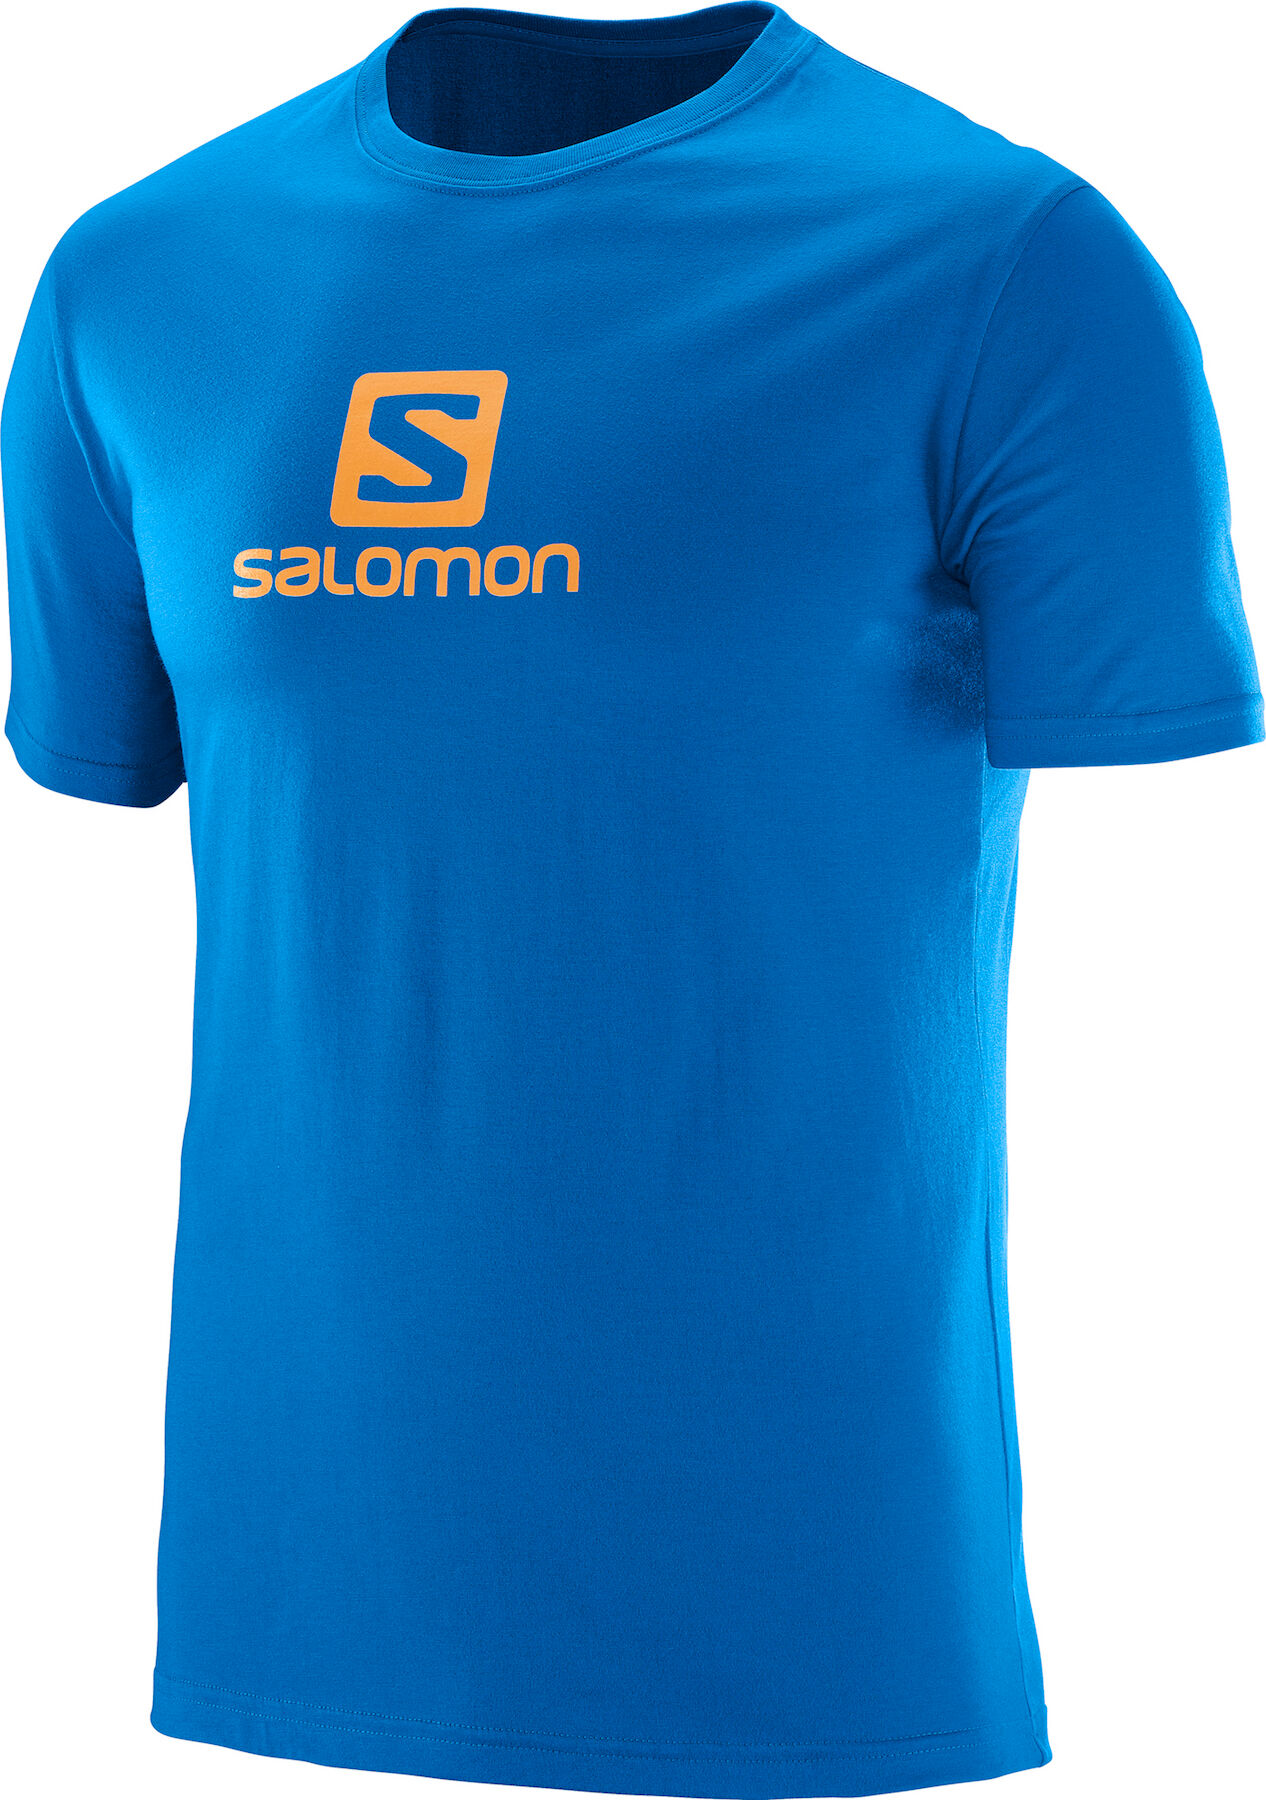 Salomon - Coton Logo SS TEE M - Camiseta - Hombre